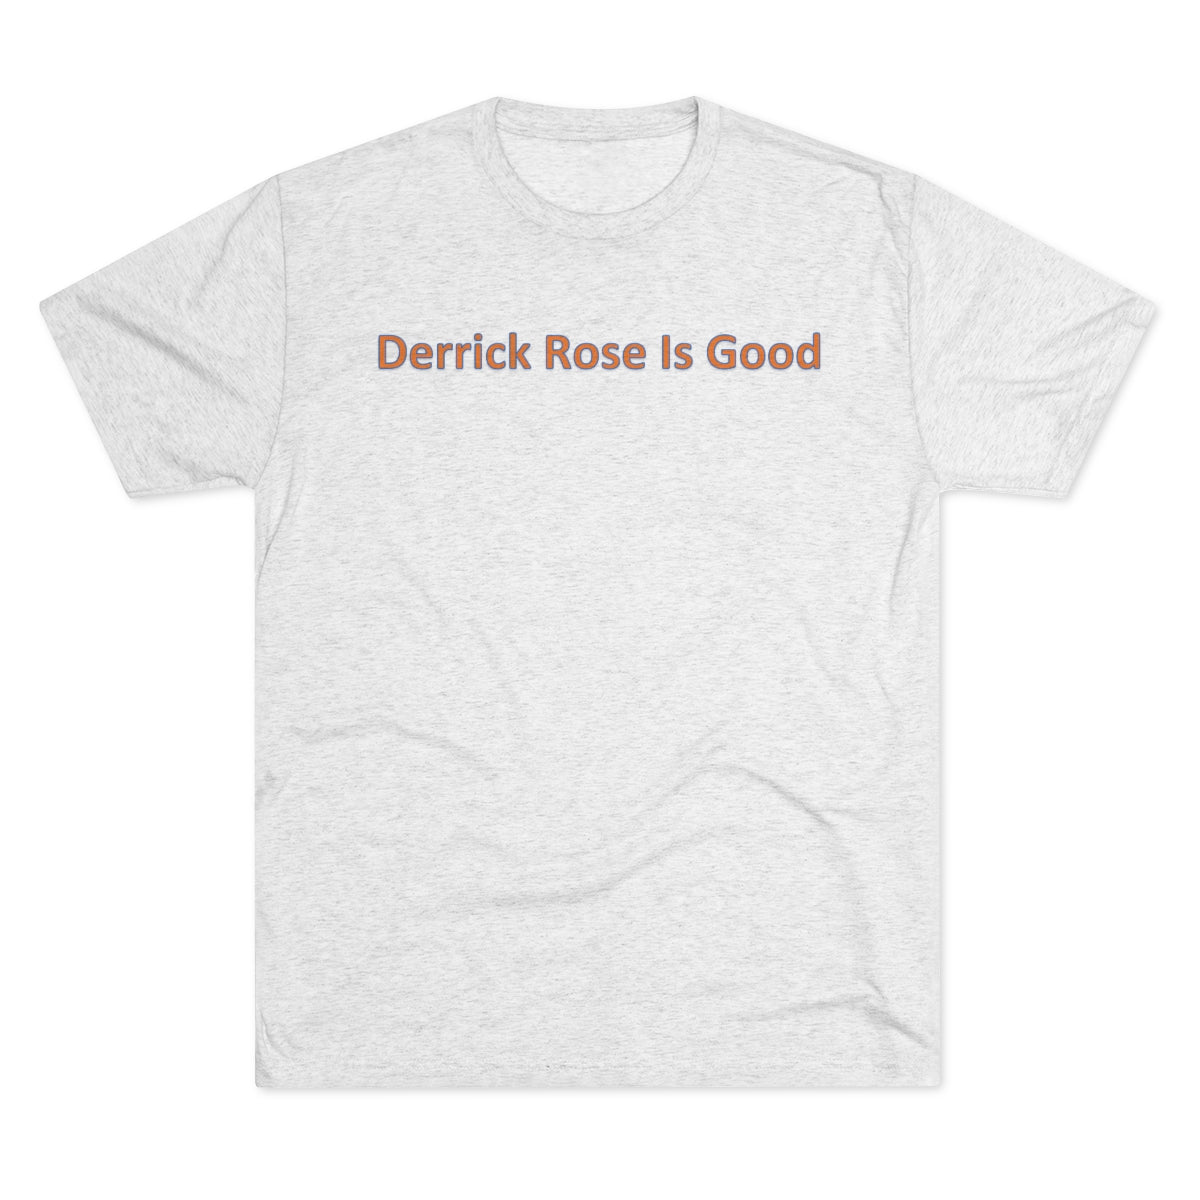 Derrick Rose Is Good T-Shirt - IsGoodBrand